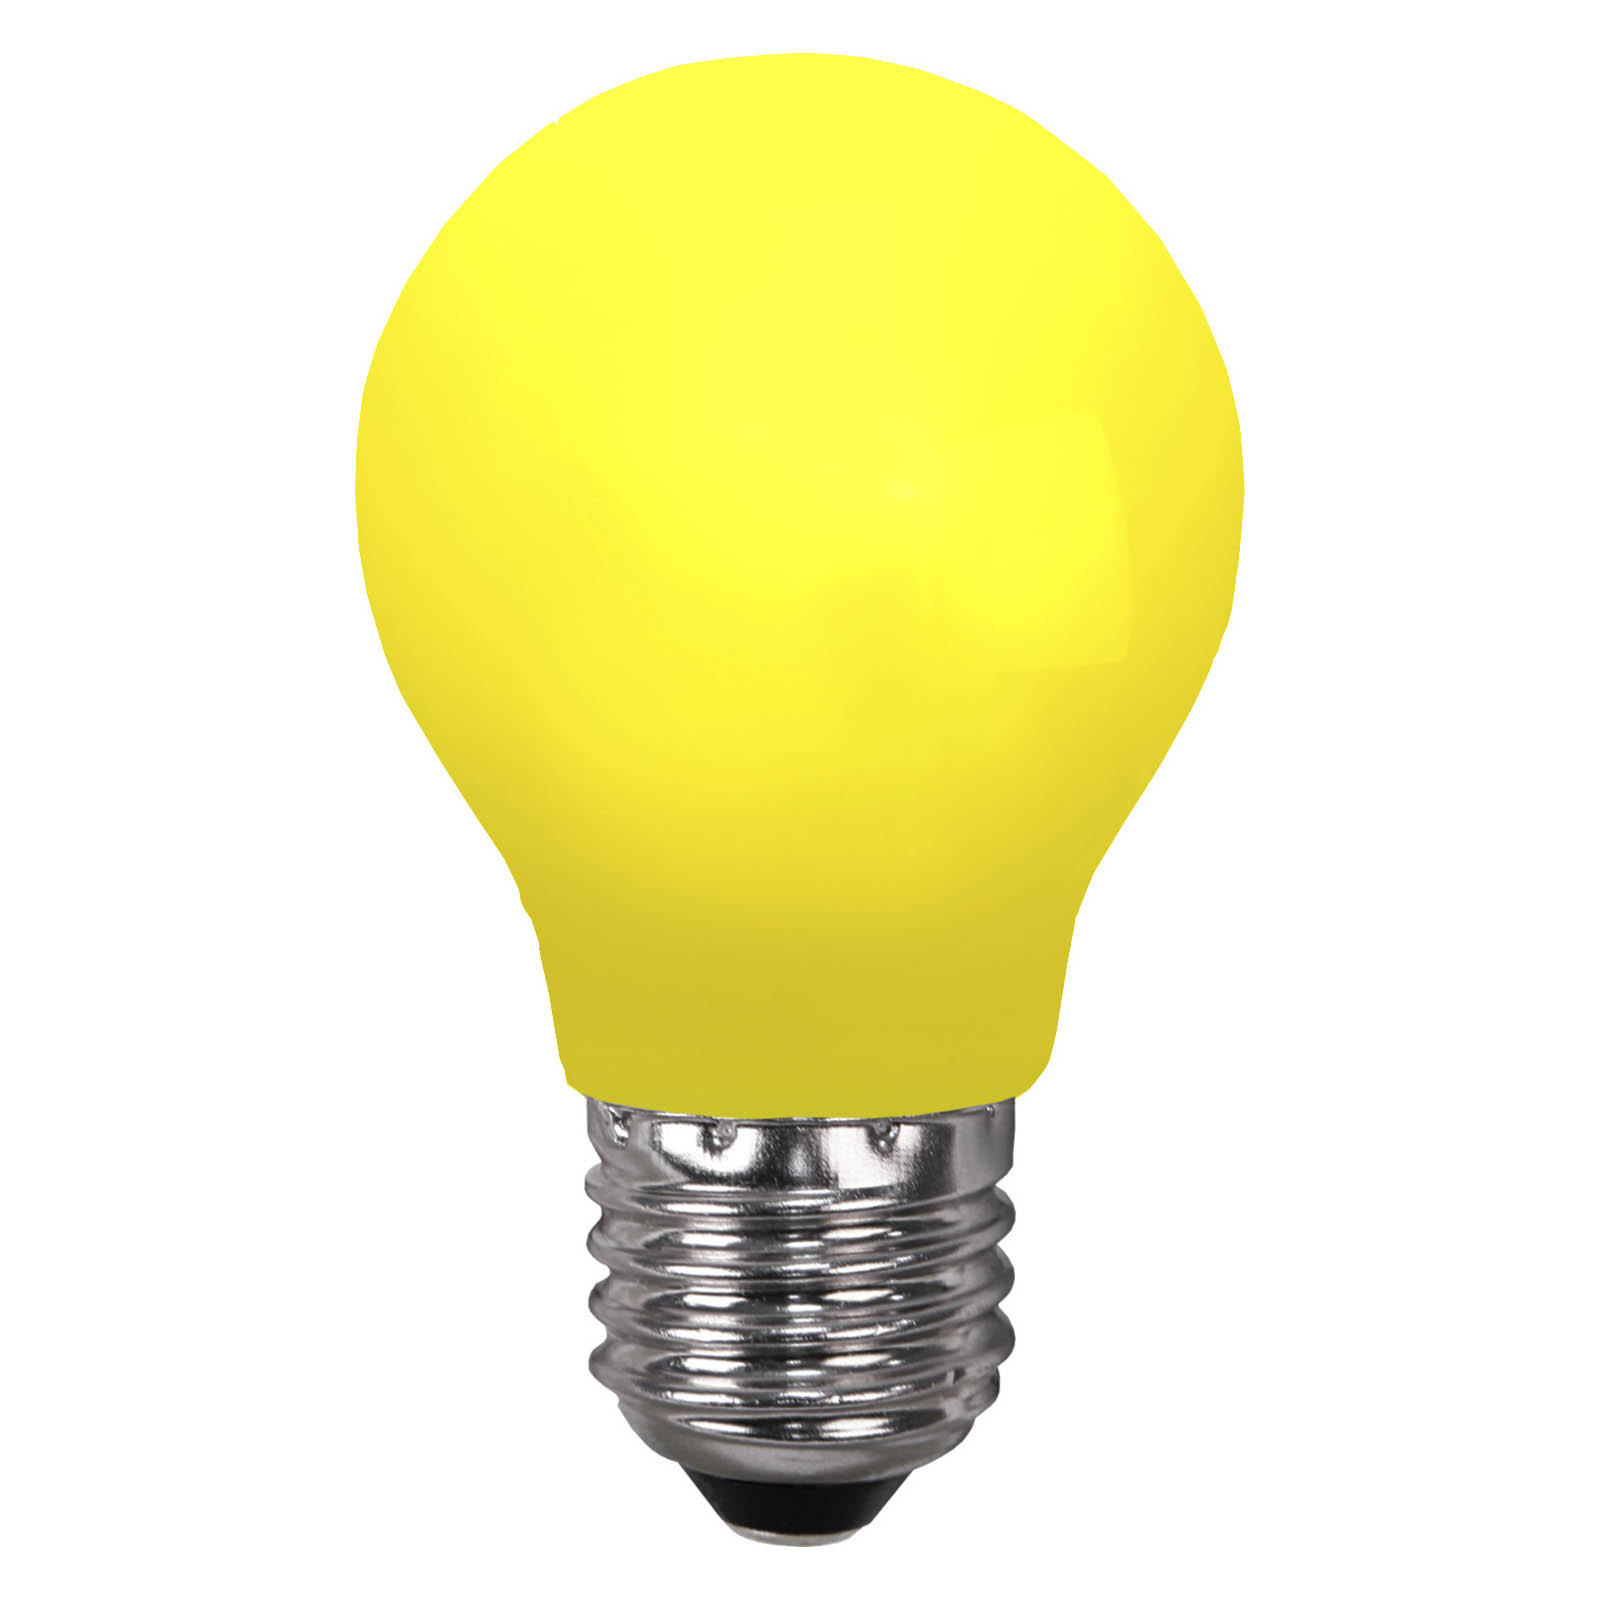 LED spuldze E27 pasaku gaismām, izturīga pret salaušanu, dzeltena